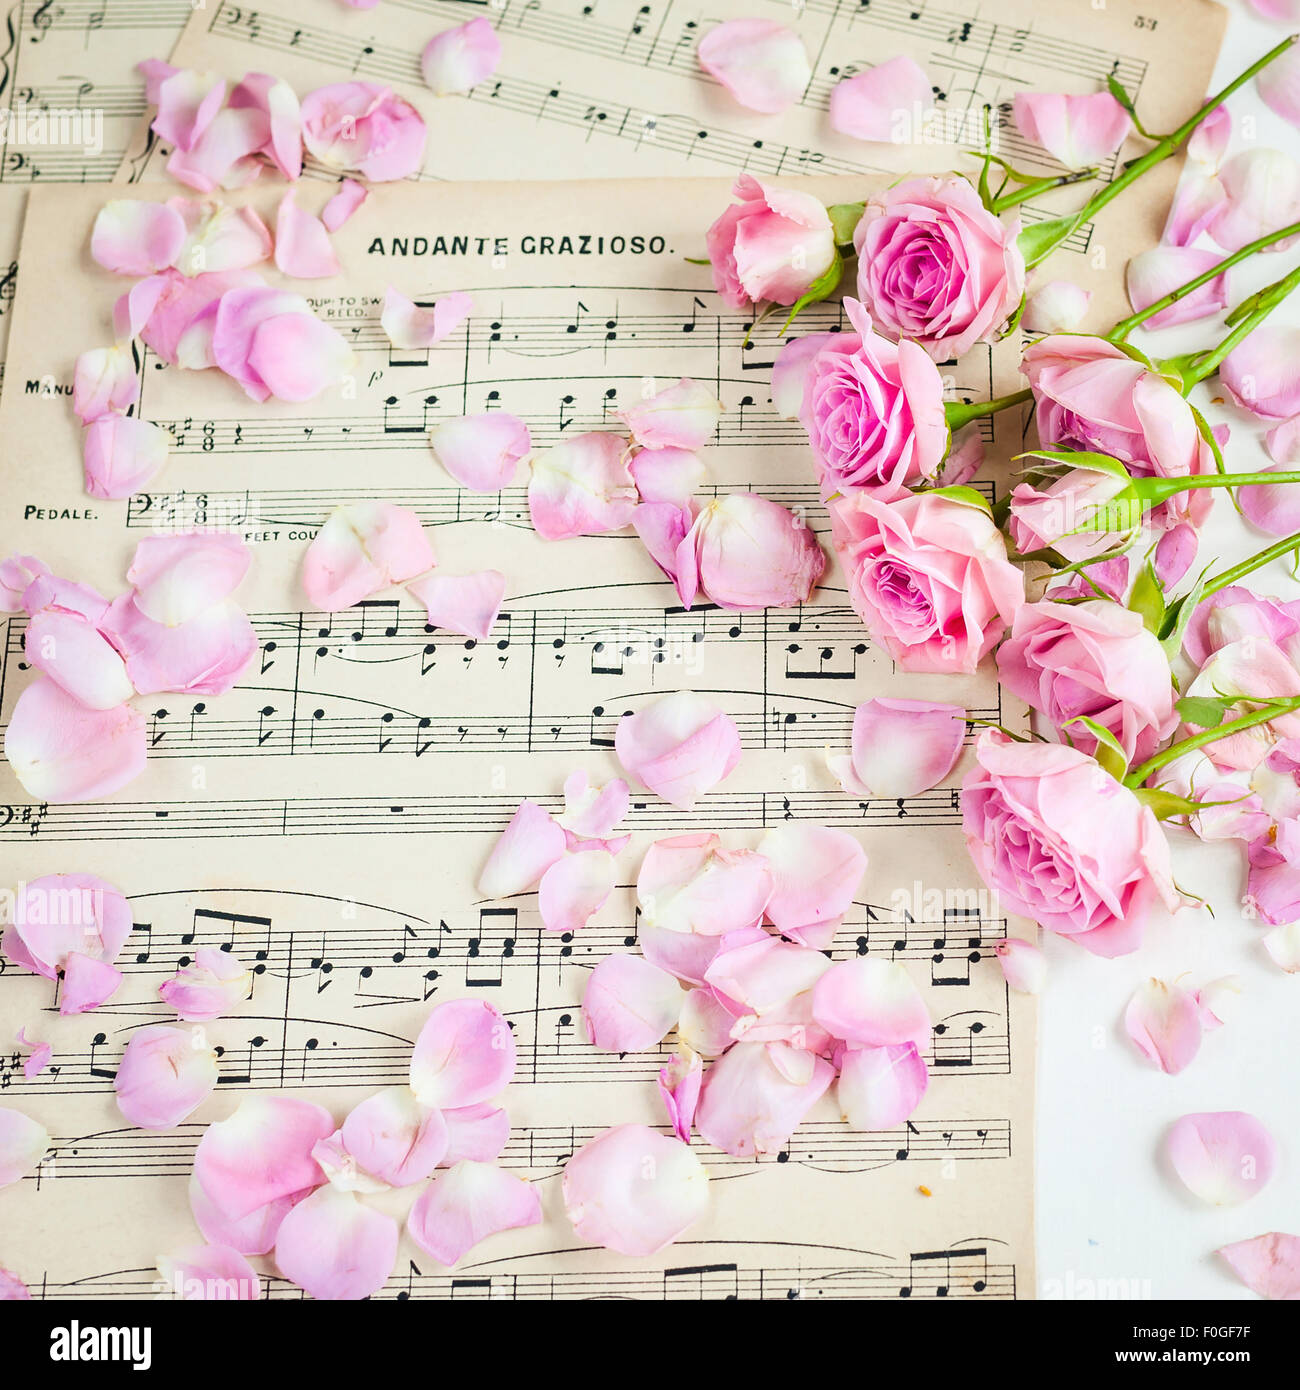 Le rose rosa su vintage carta da musica Foto Stock